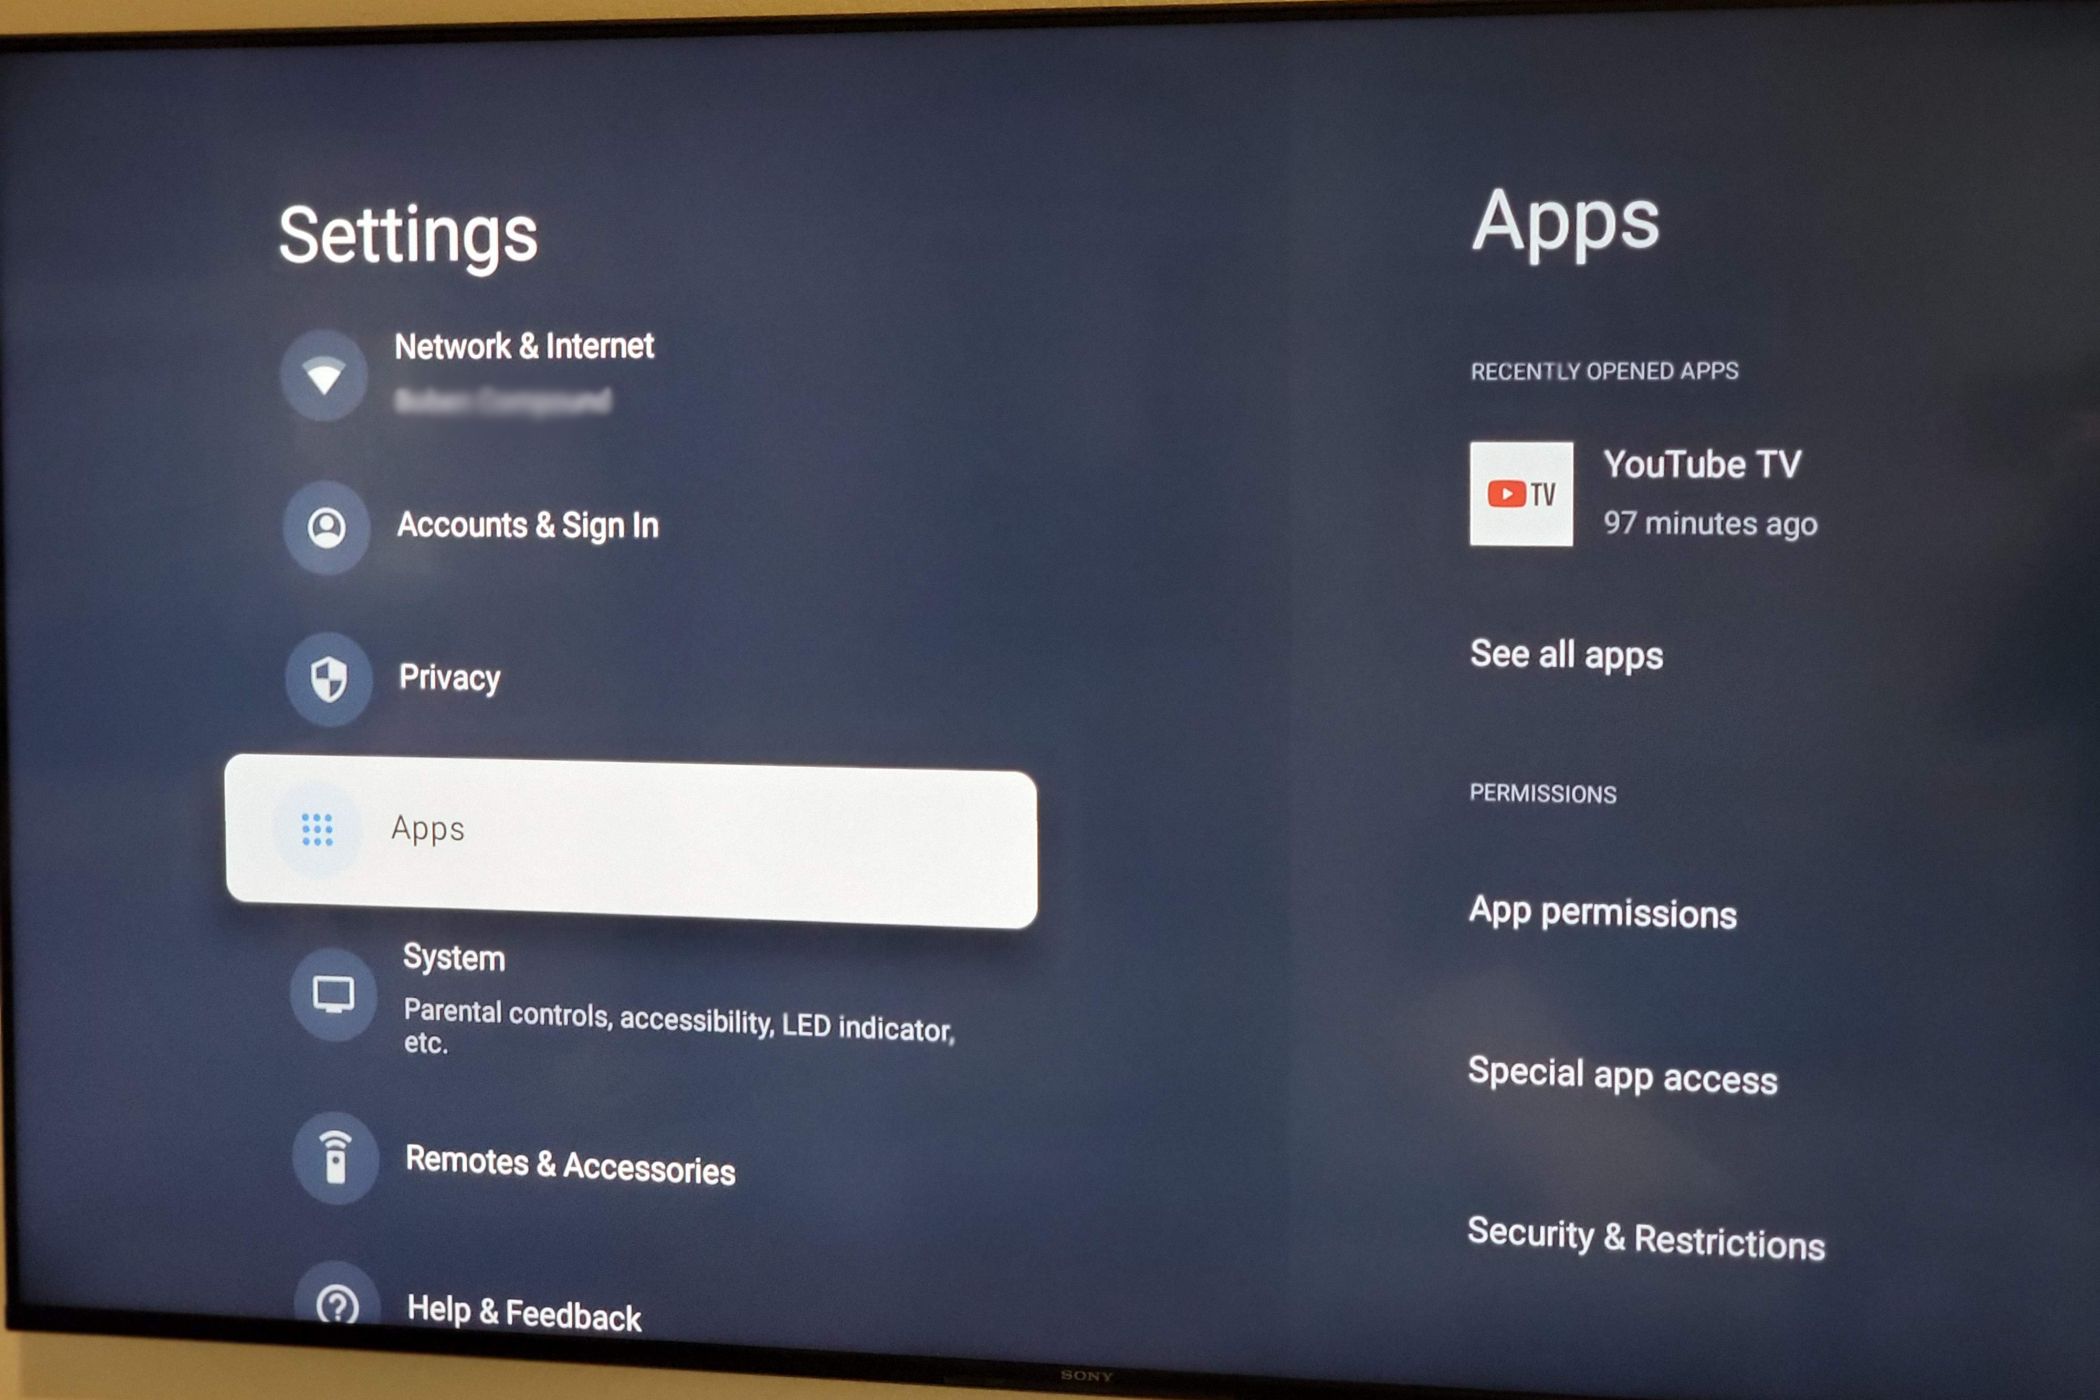 Google TV apps in settings menu.